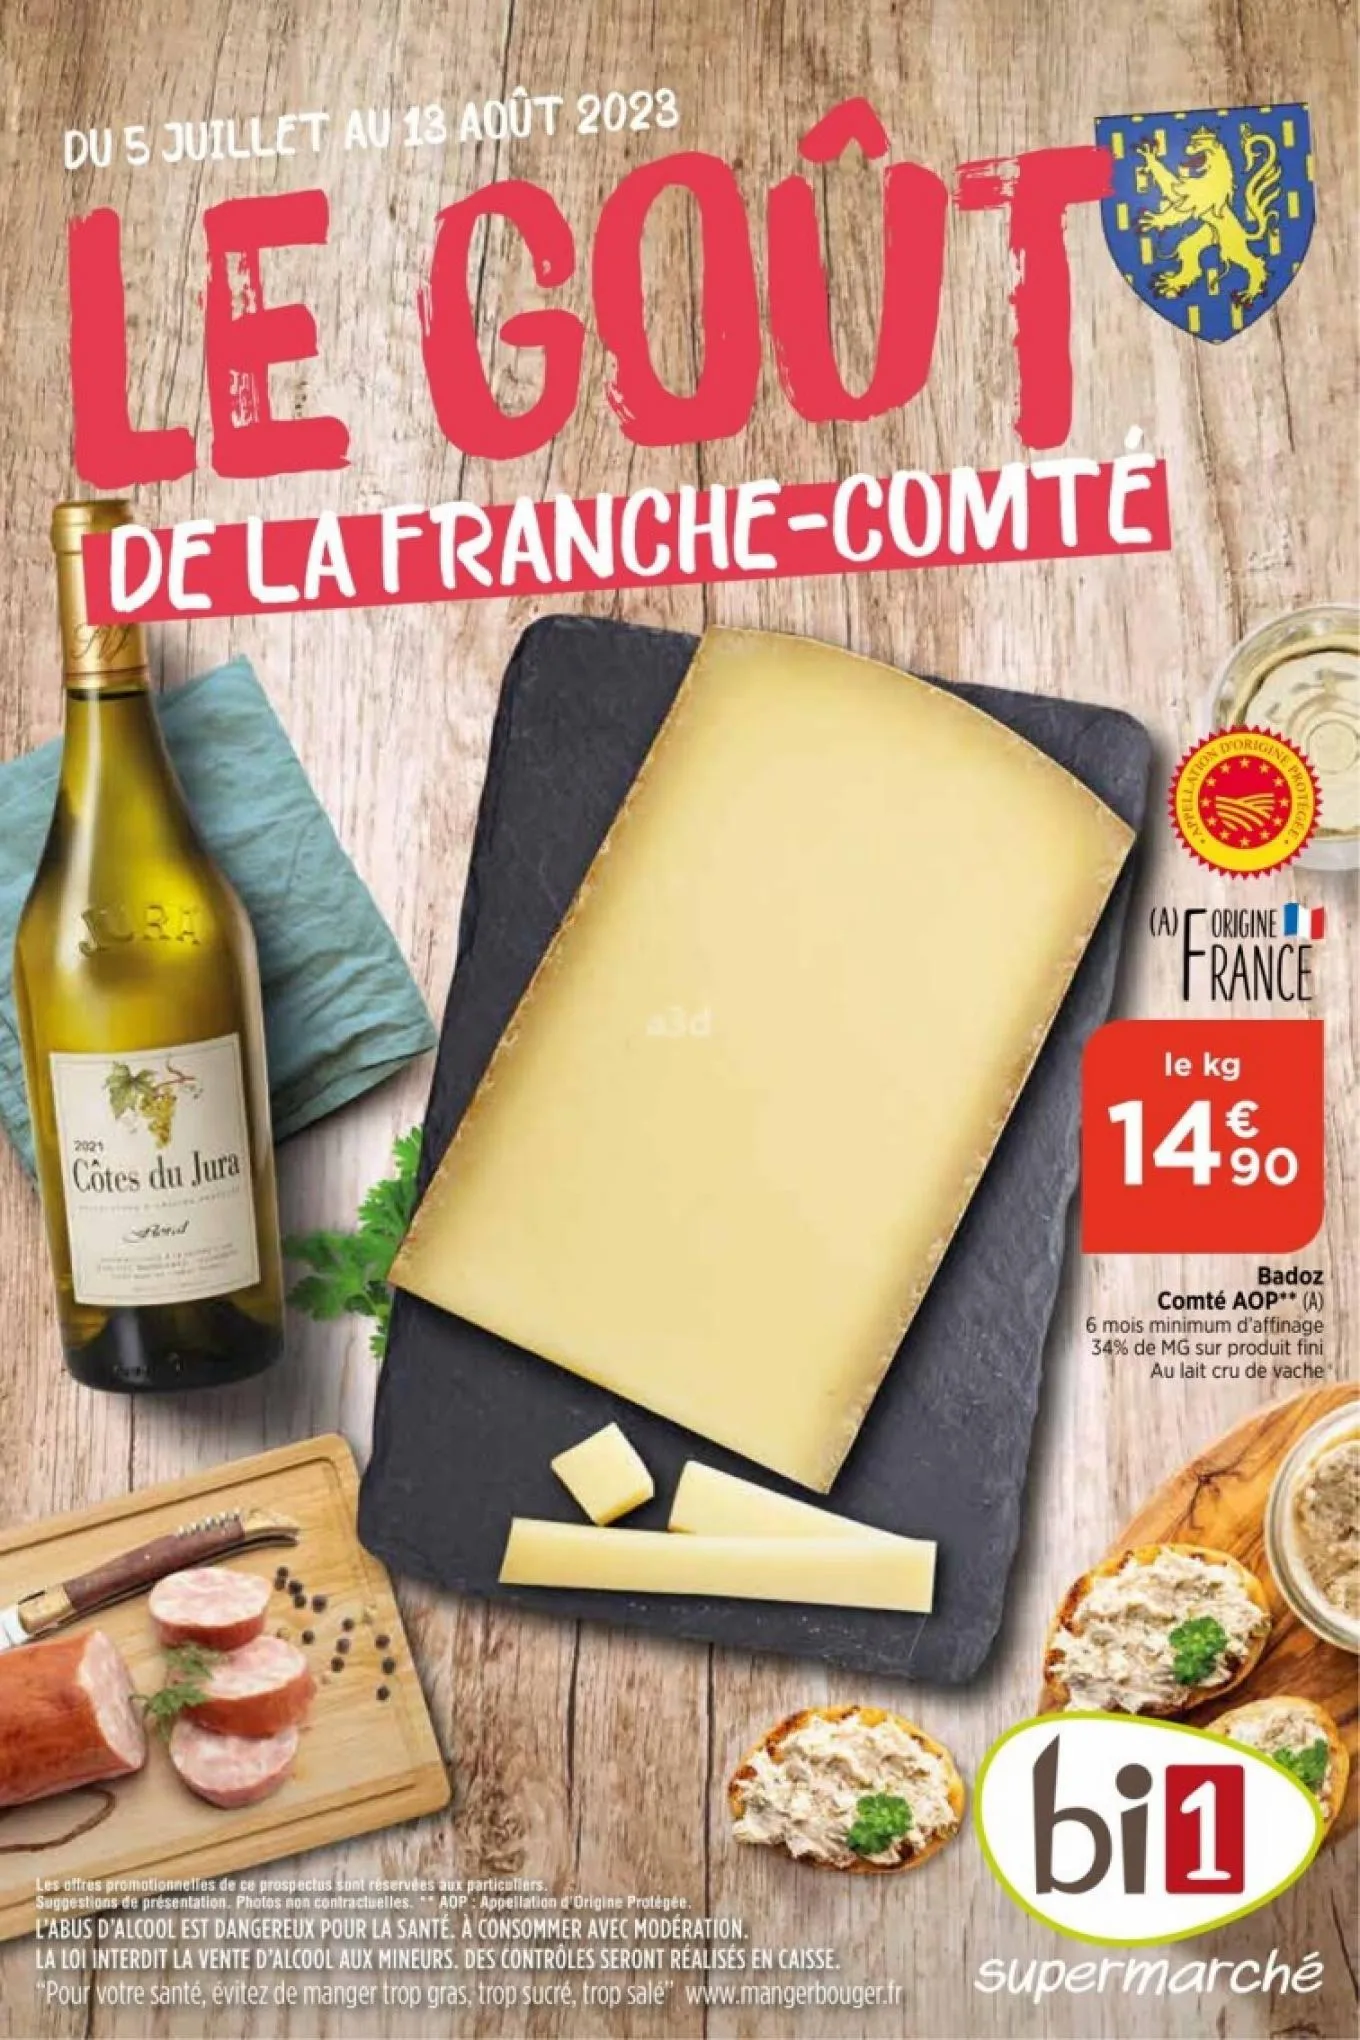 Catalogue Le gout de la franche-comte, page 00001